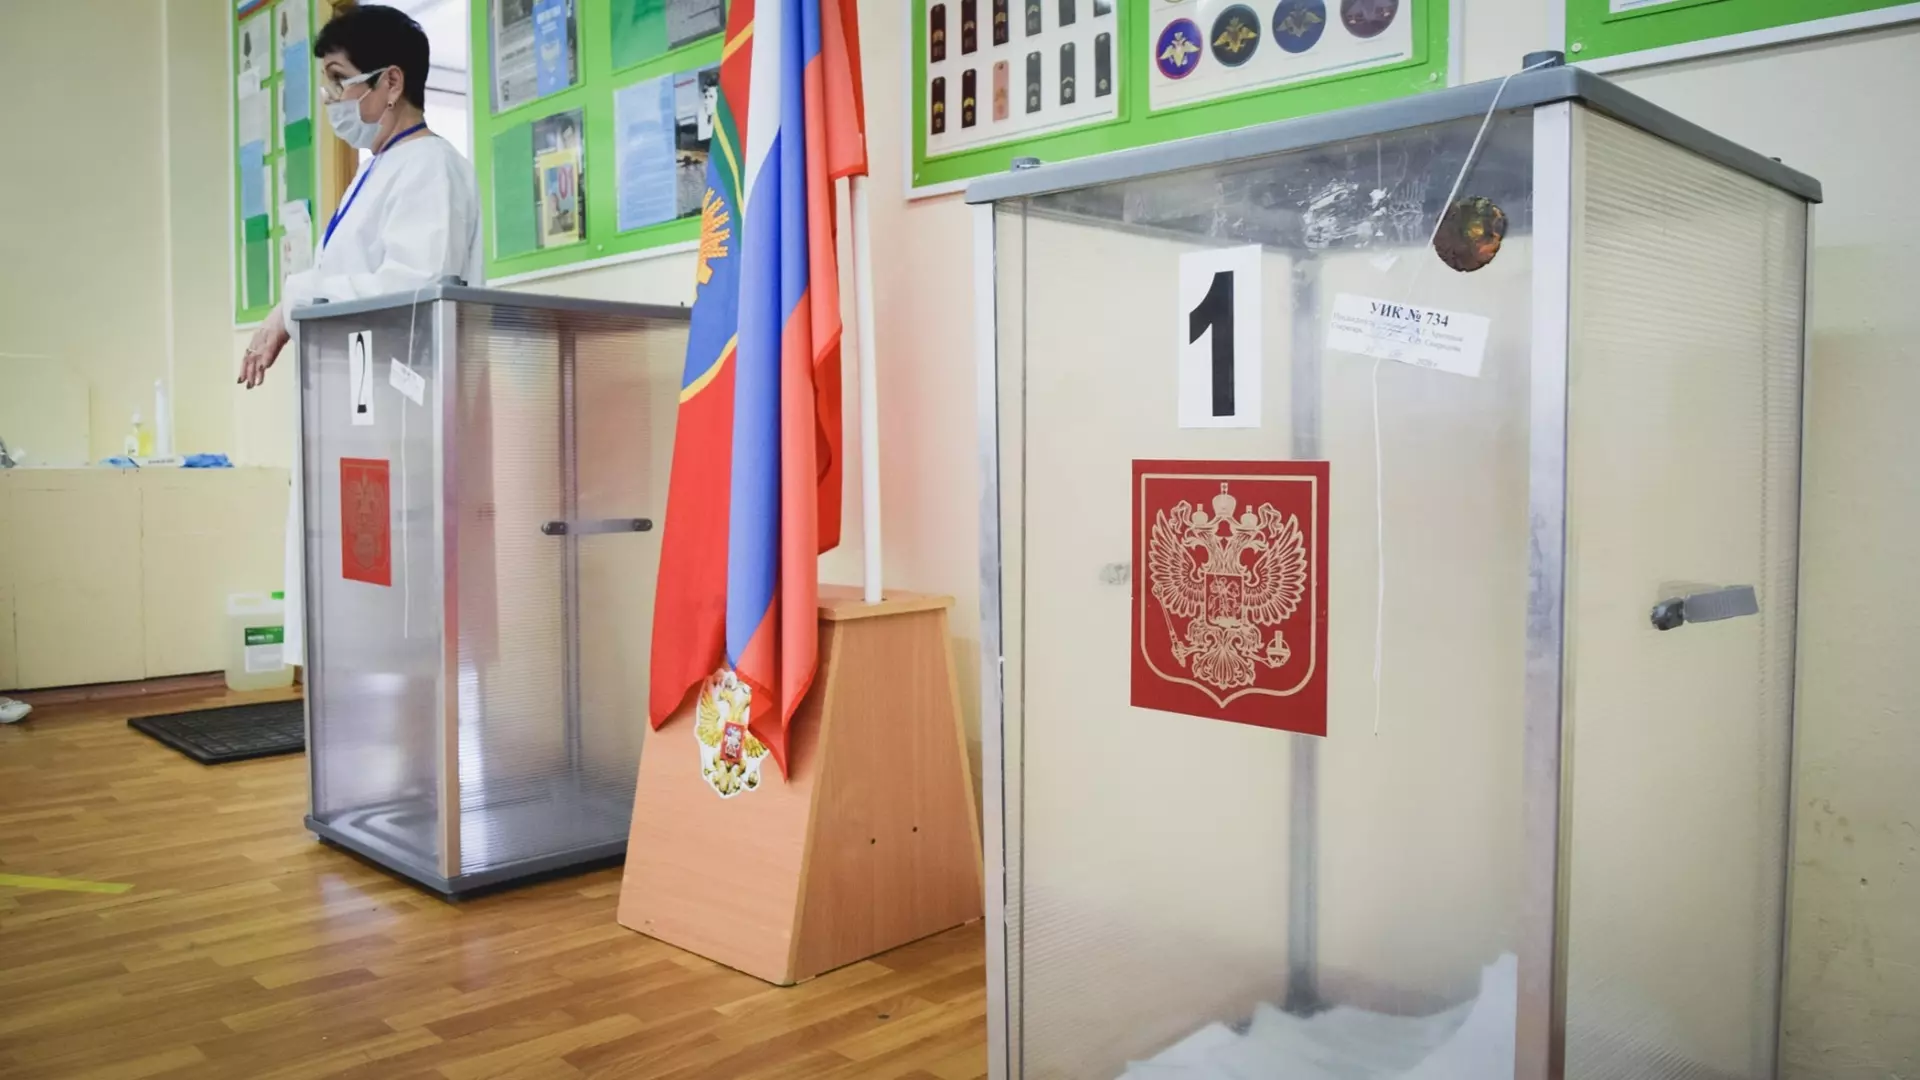 Около 300 сотрудников Сургутнефтегаза задействованы на выборах президента РФ